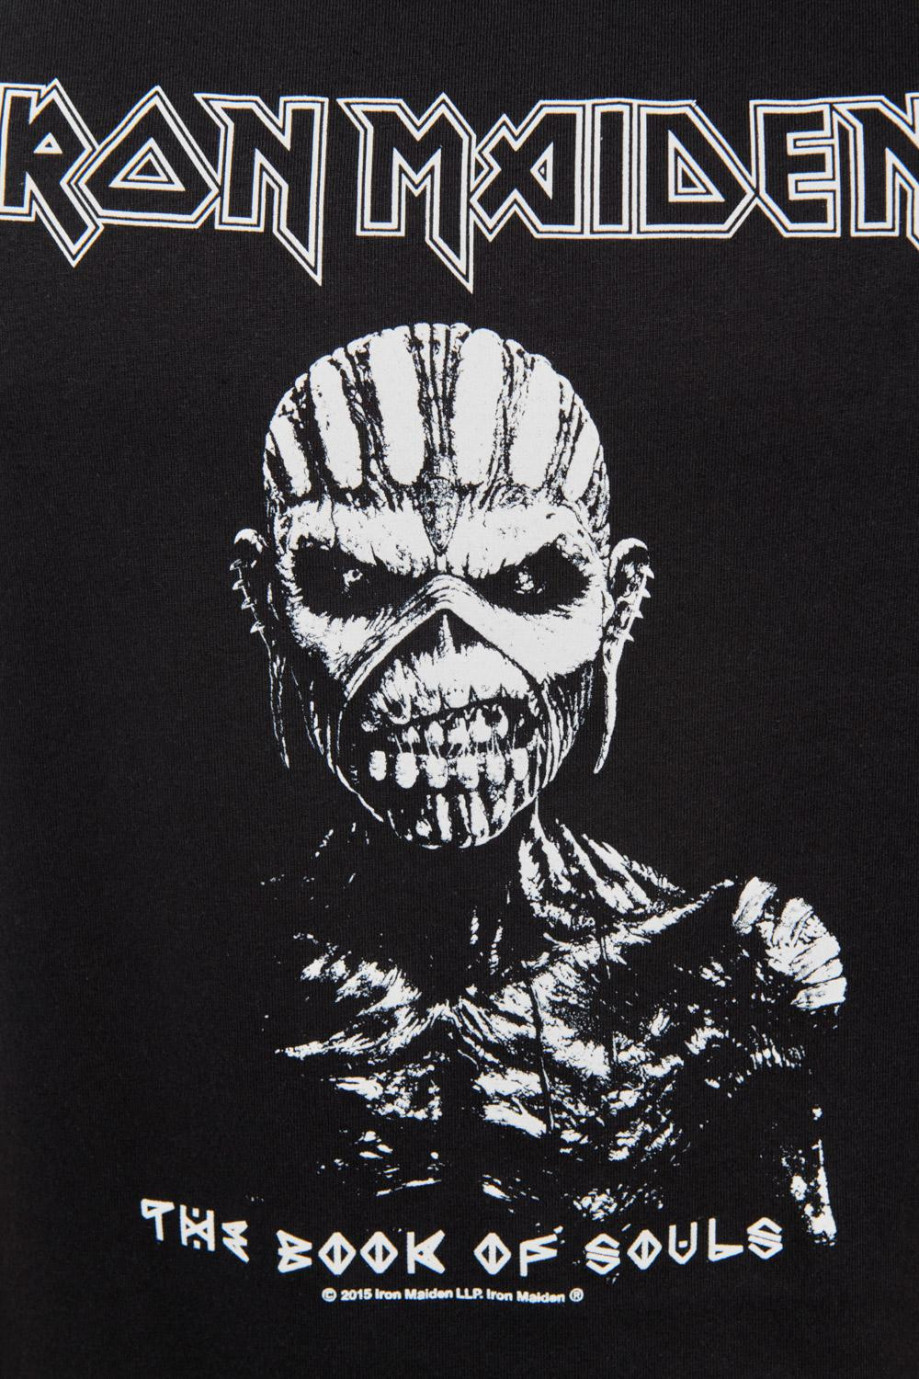 Camiseta negra manga corta con estampado de Iron Maiden en frente